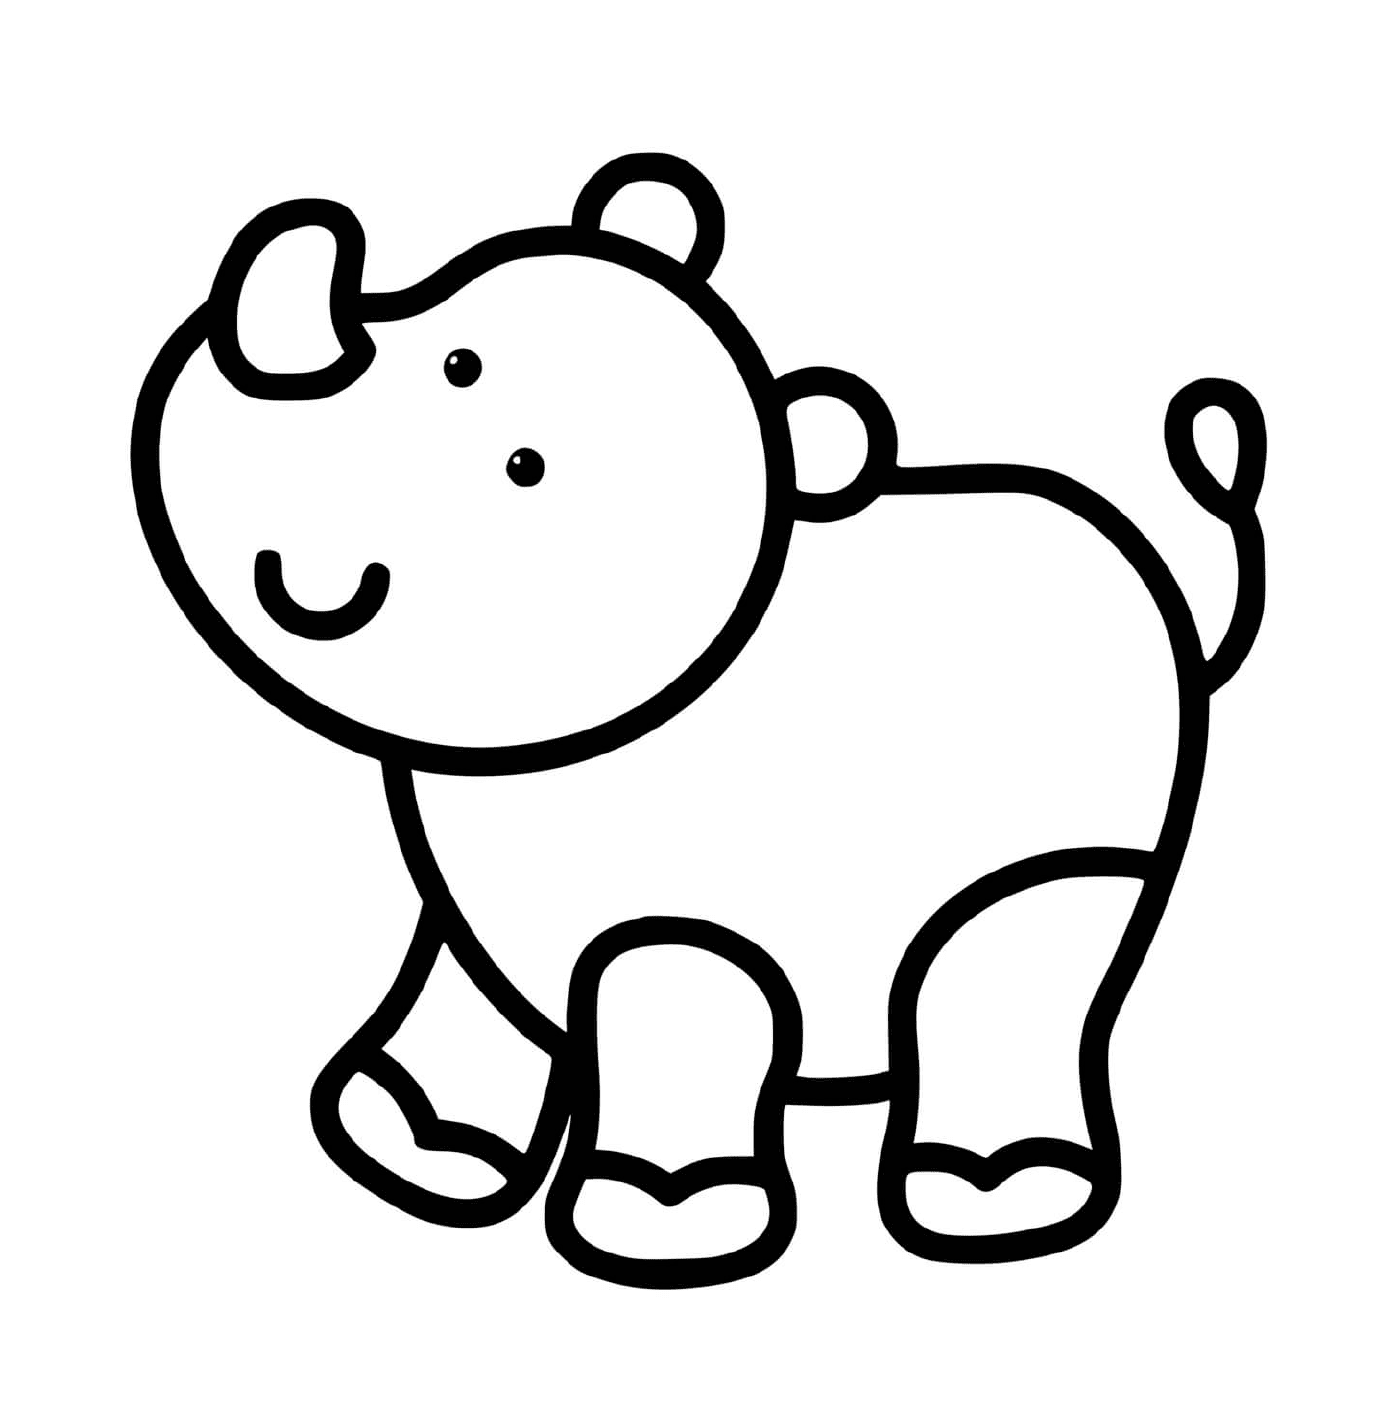  Un rinoceronte fácil de dibujar para niños de 2 años 